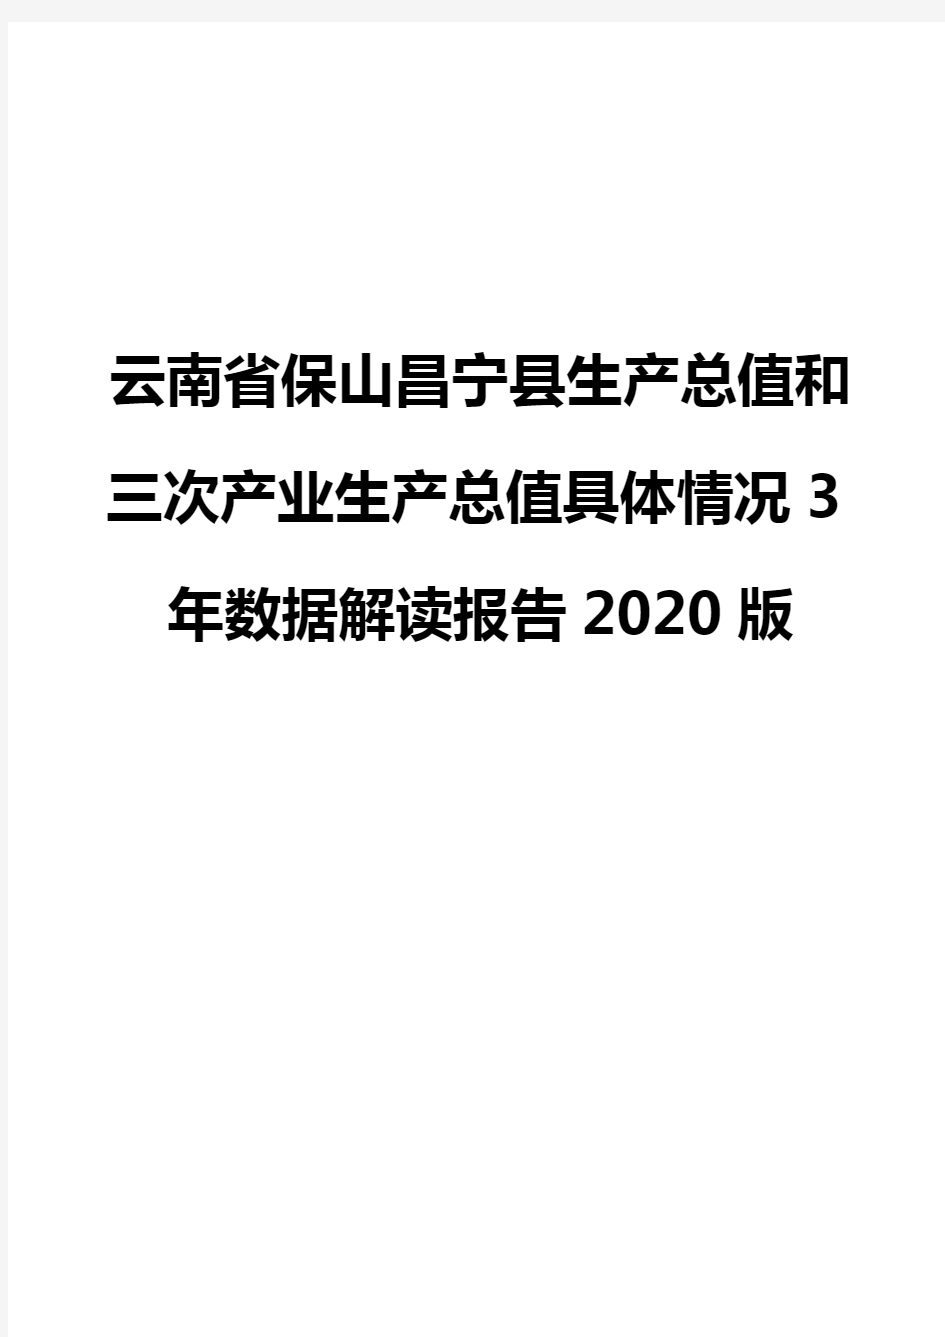 云南省保山昌宁县生产总值和三次产业生产总值具体情况3年数据解读报告2020版